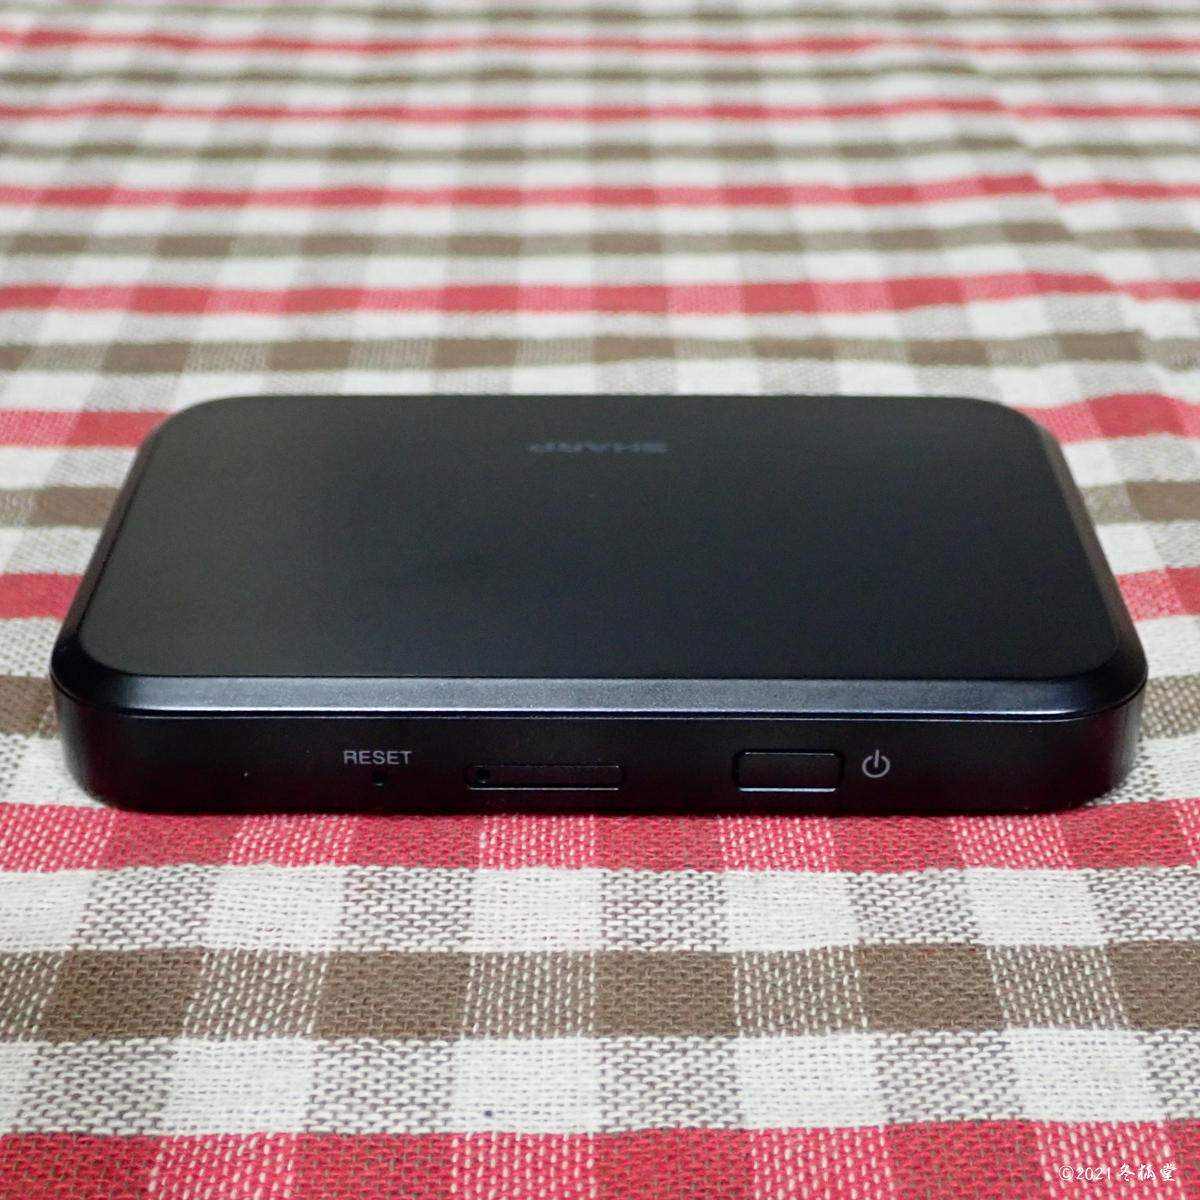 SIMフリーモバイルルータ Pocket WiFi 809SH (Wi-Fi STATION SH-05Lと同機器) [中古] + プリペイドSIM（10ギガ最長180日間）セット _画像7